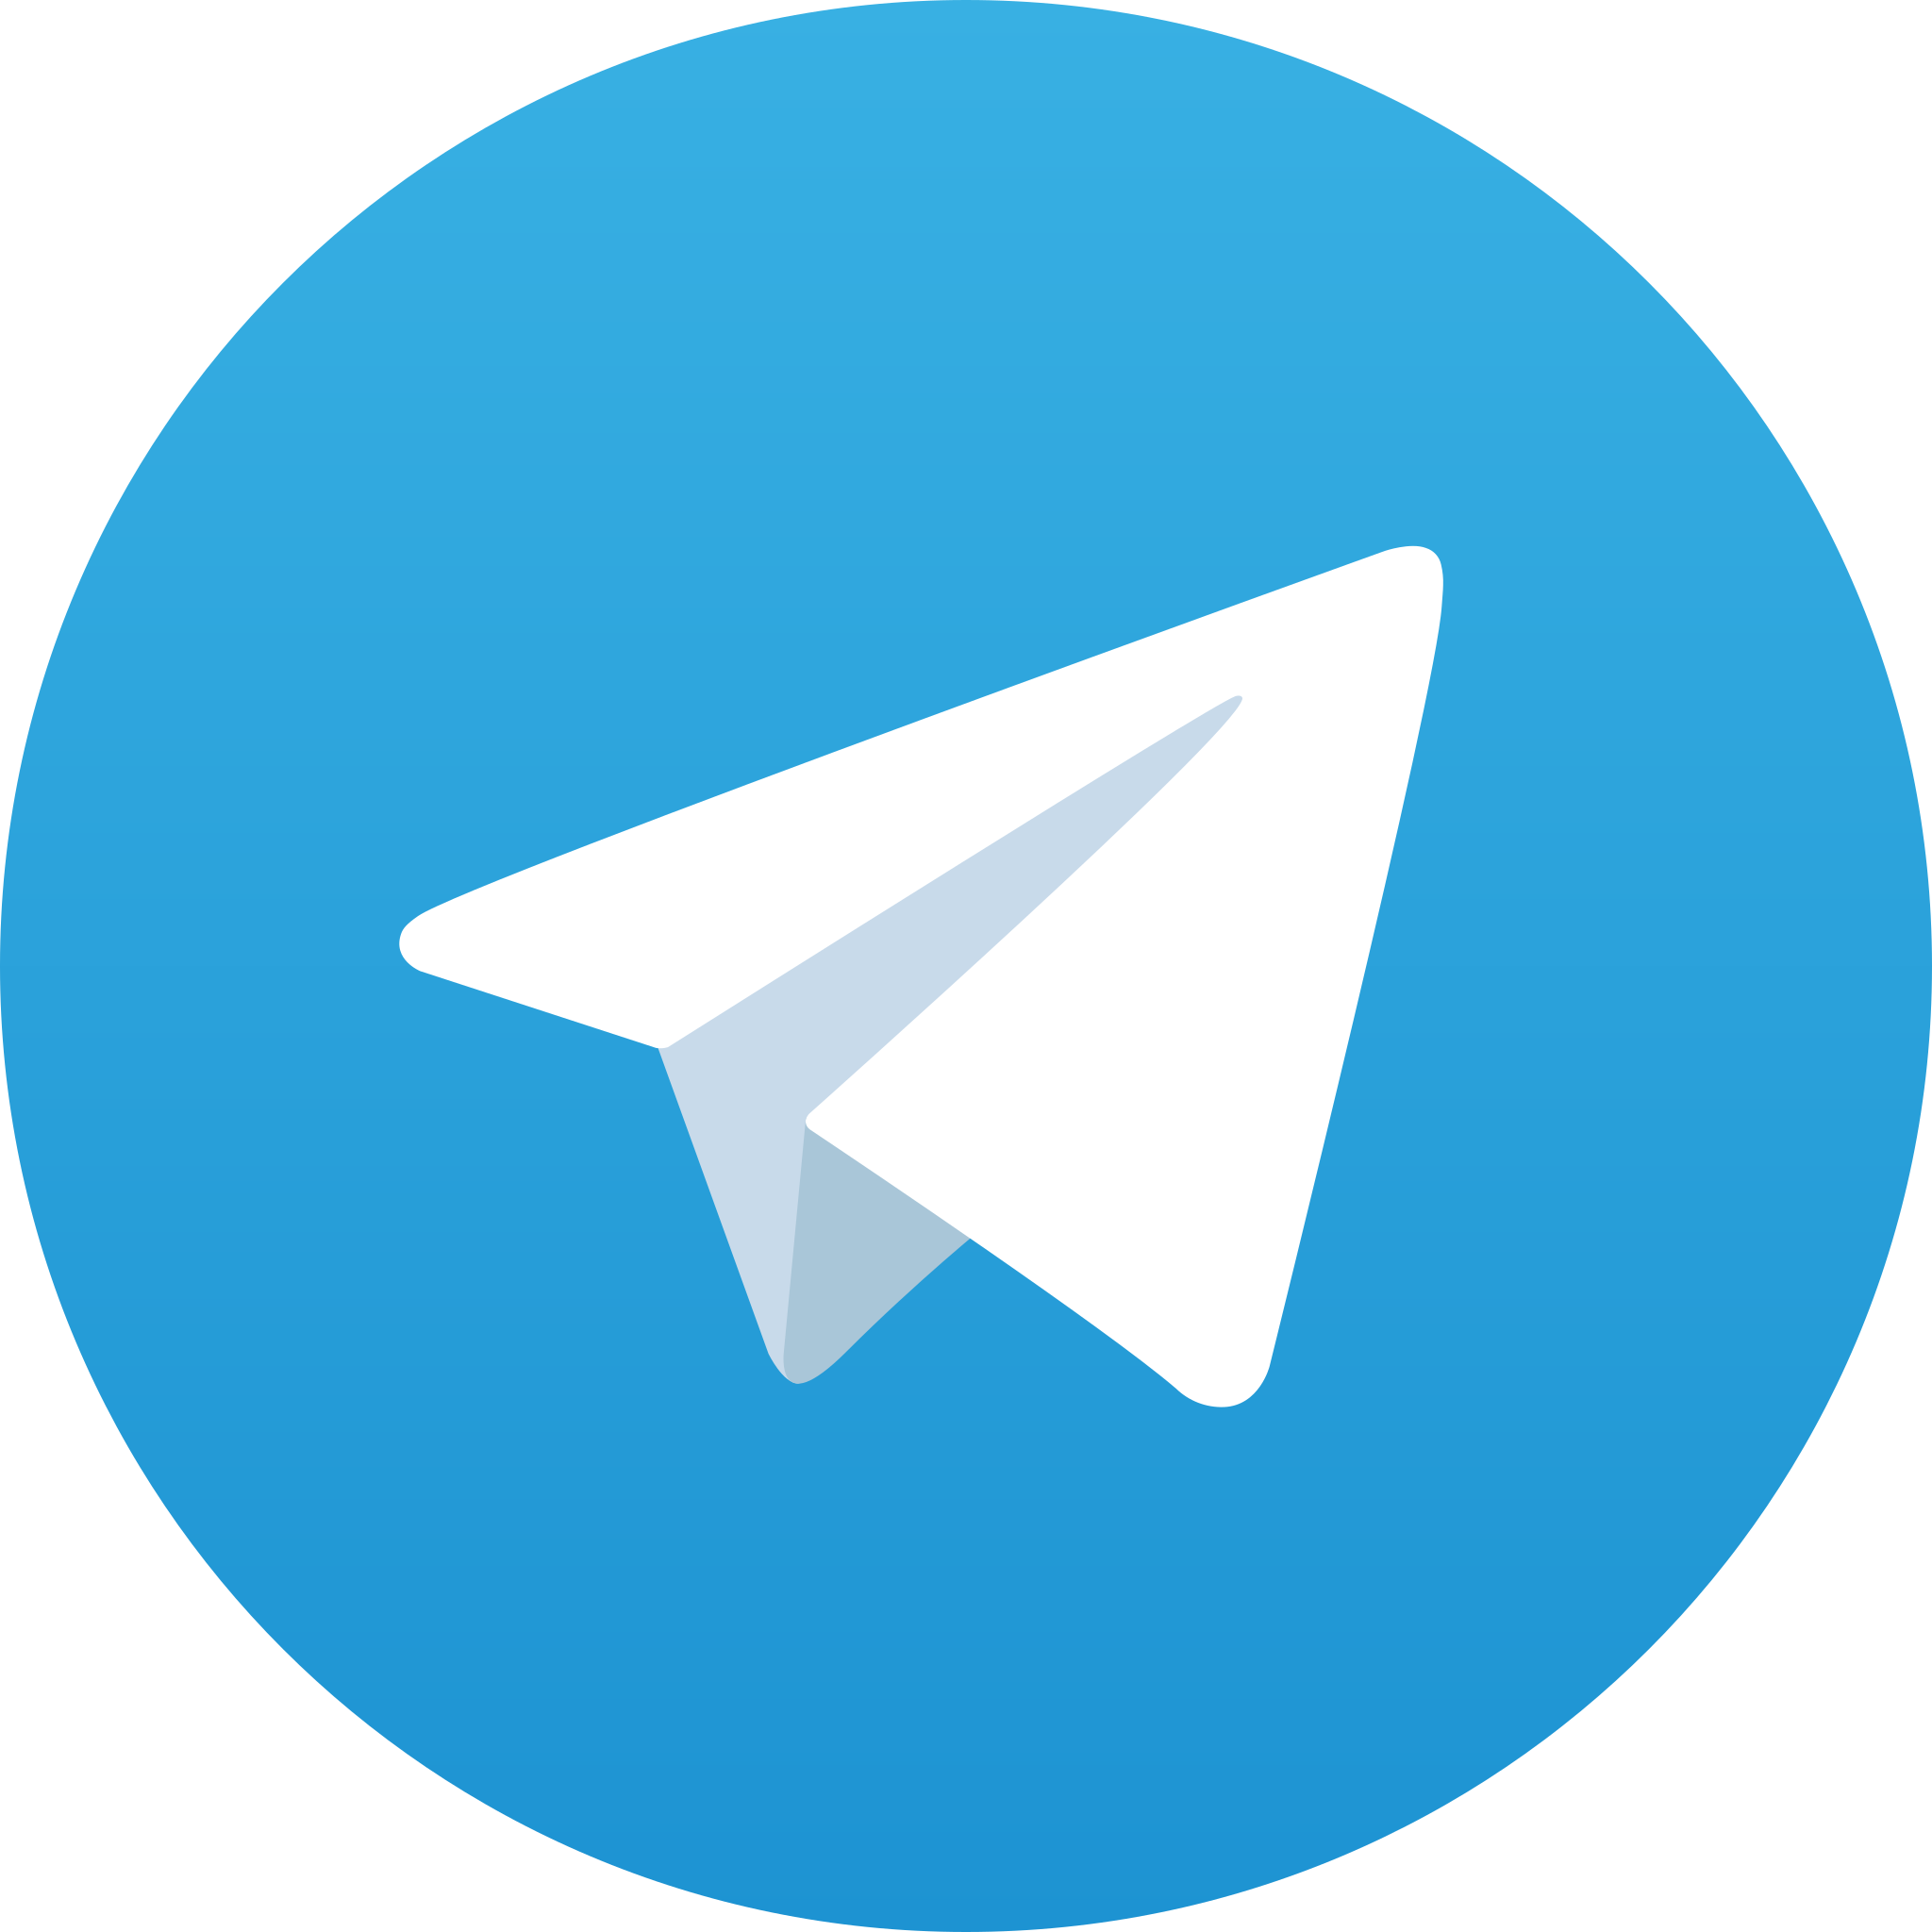 پشتیبانی صفر یک وب در تلگرام